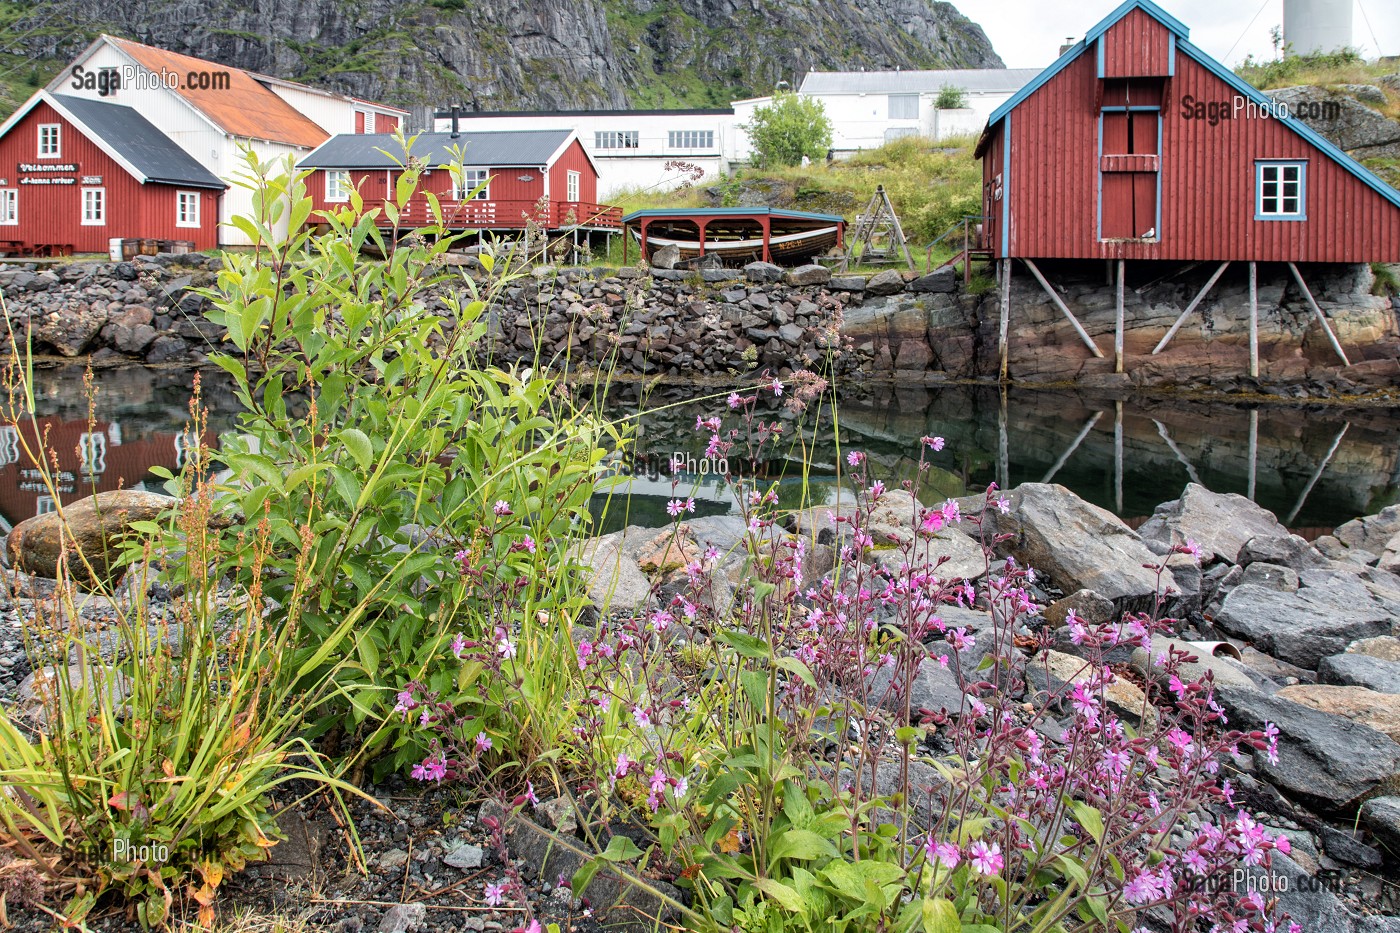 MAISONS TRADITIONNELLES EN BOIS DE COULEUR ROUGE, VILLAGE MUSEE DE PECHEURS DE A (NORSK FISKEVAERSMUSEUM), ILES LOFOTEN, NORVEGE 